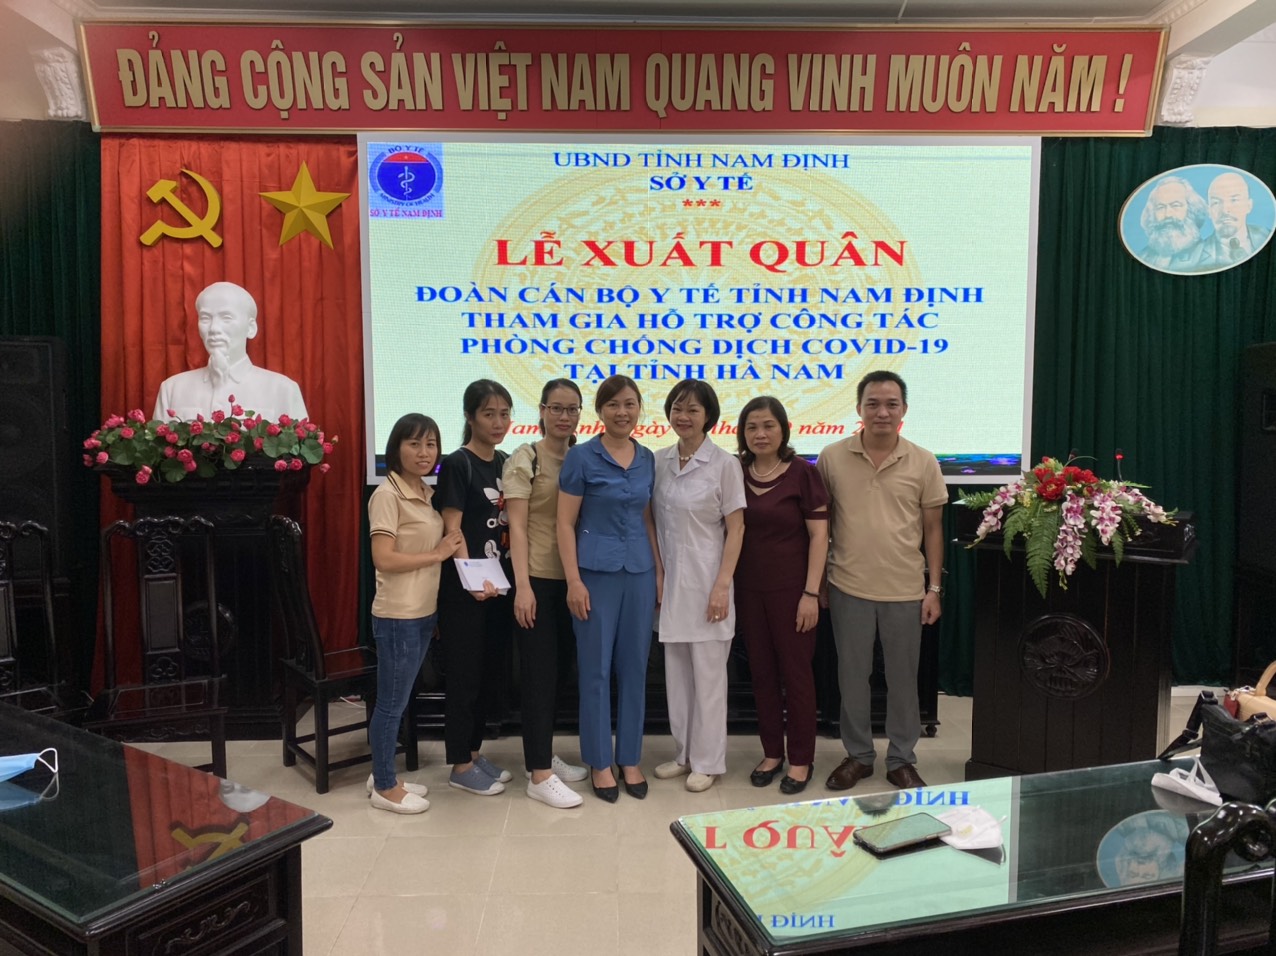 Trường Trung cấp Y tế Nam Định xuất quân tham gia hỗ trợ công tác phòng chống dịch COVID-19 tại Hà Nam